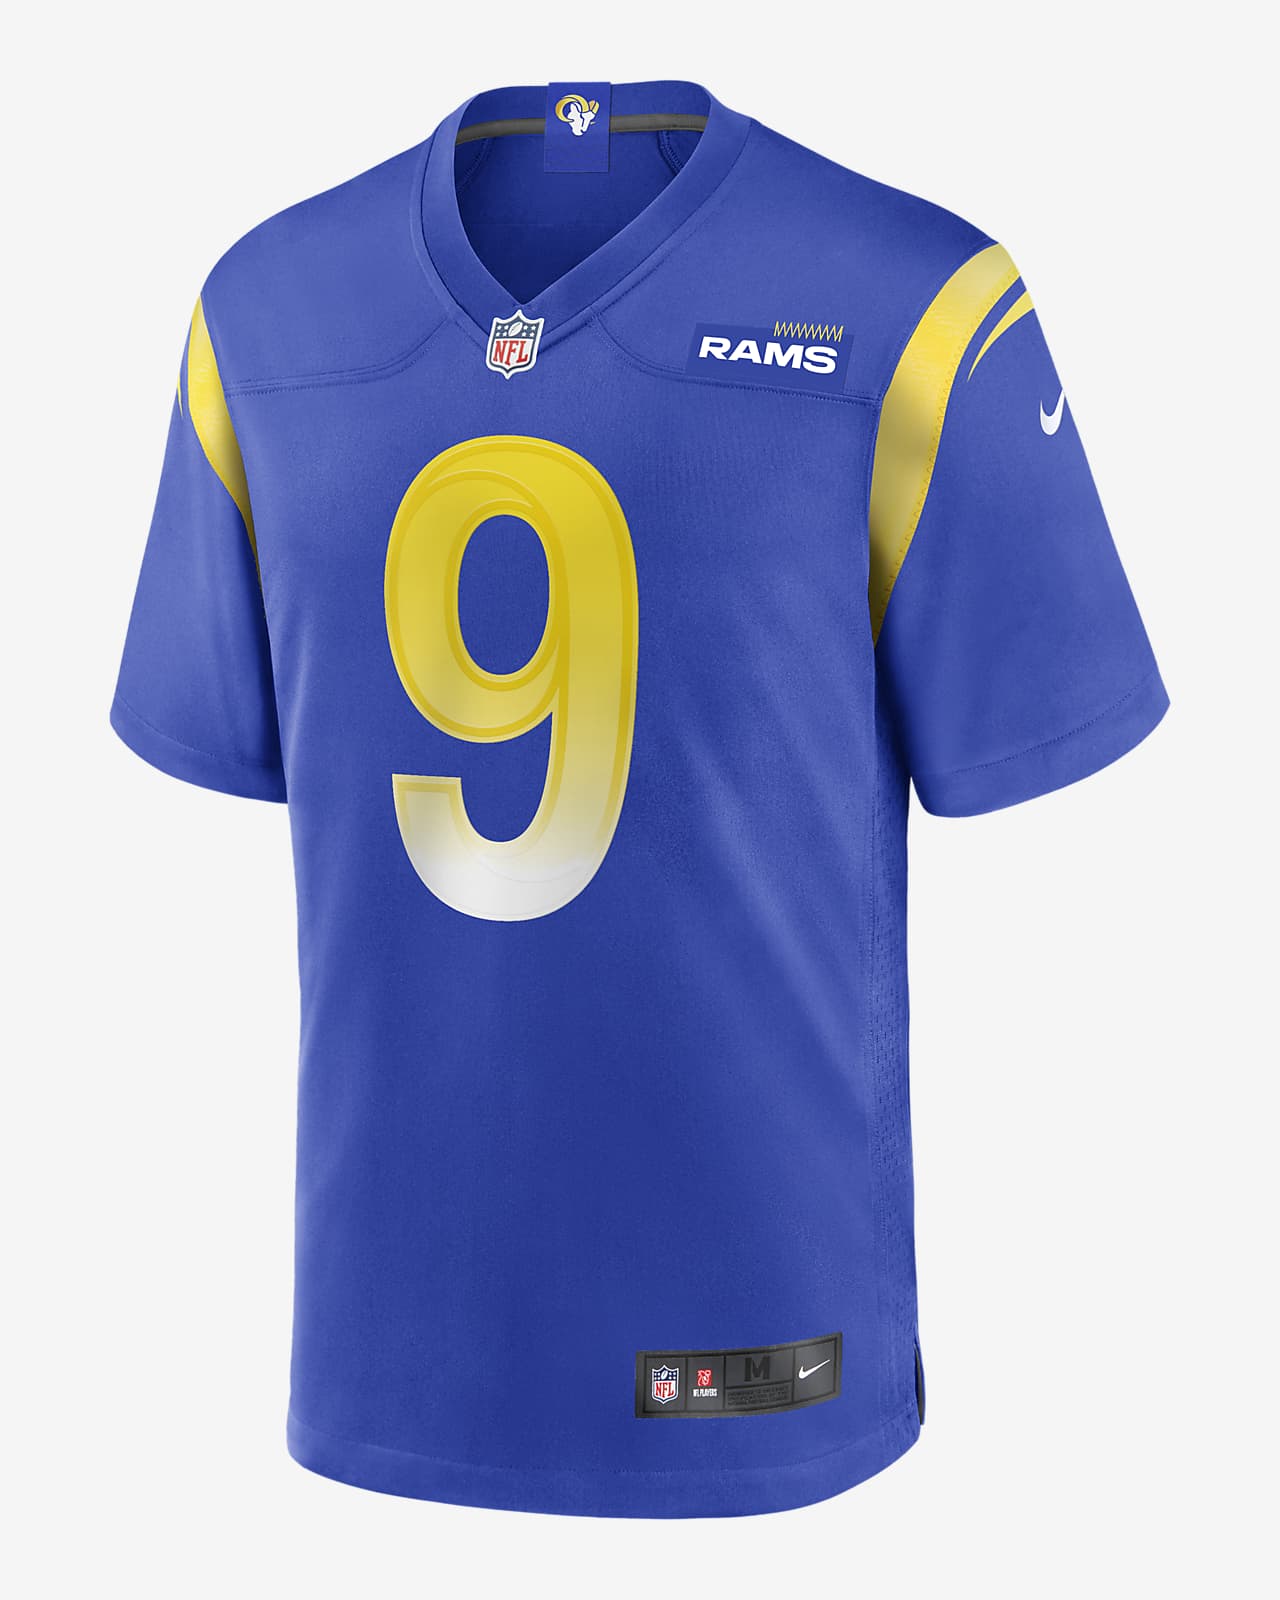 Jersey de fútbol americano Game para hombre NFL Los Angeles Rams (Matthew Stafford)